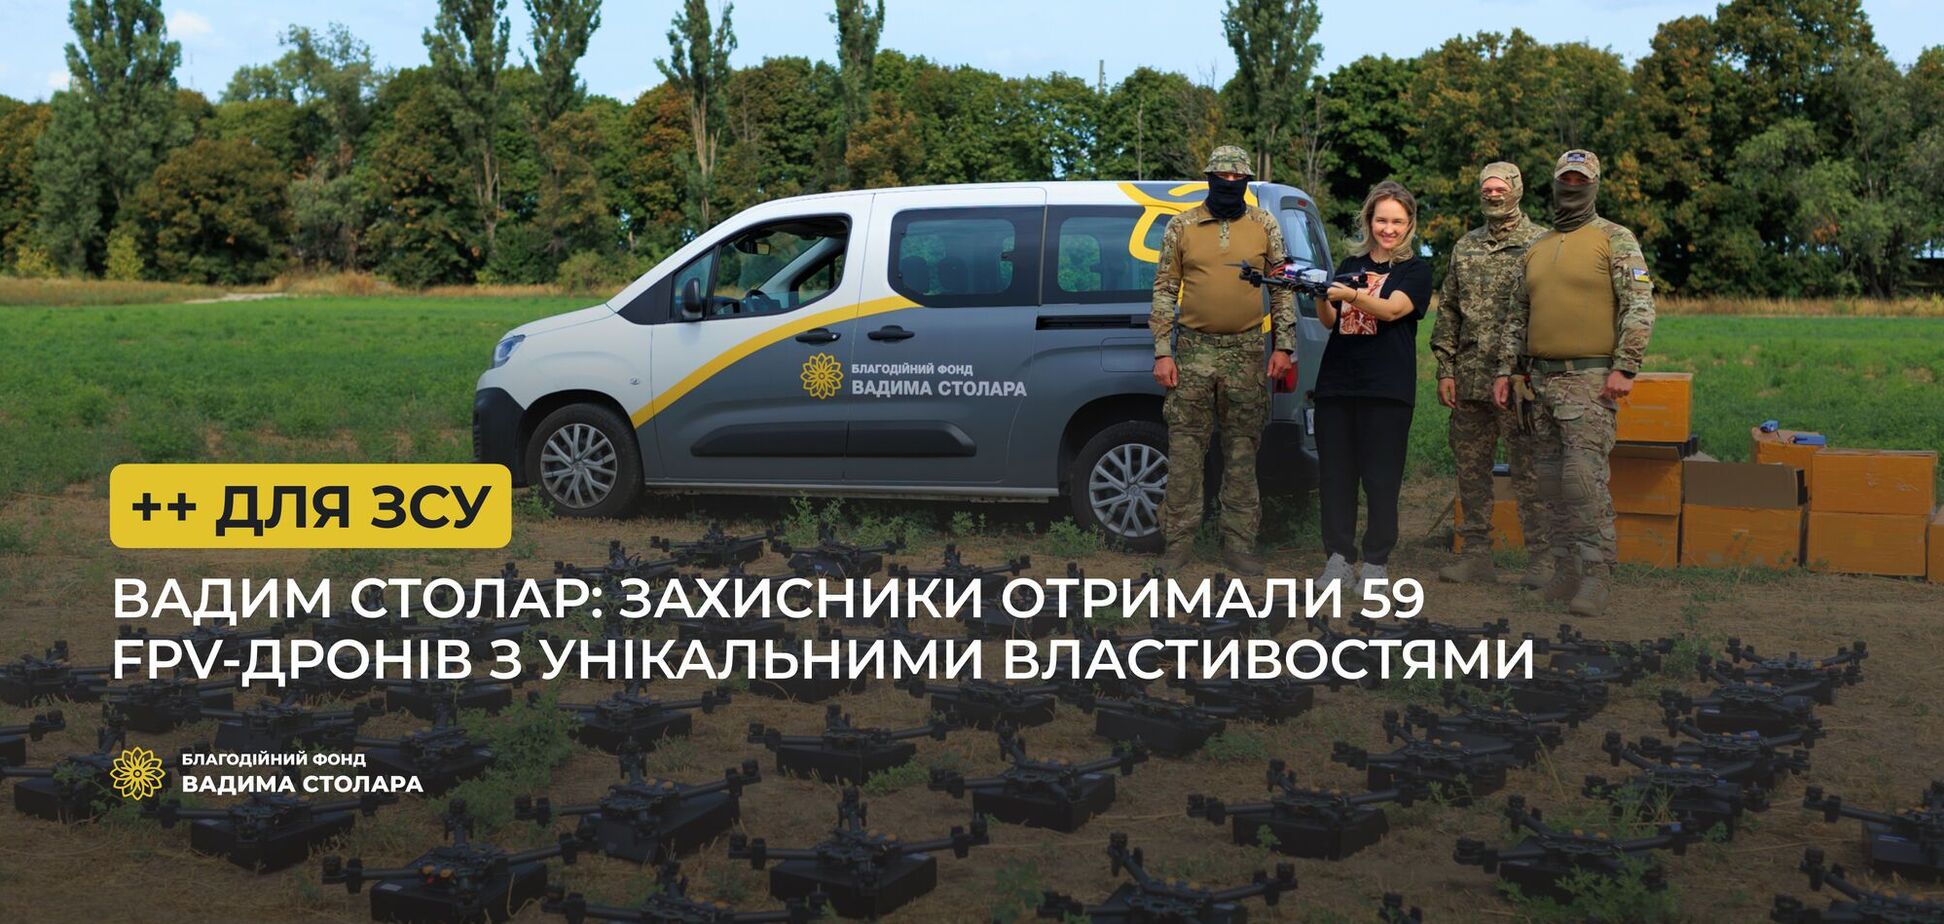 Захисники отримали нову партію FPV-дронів від Столара та волонтерів